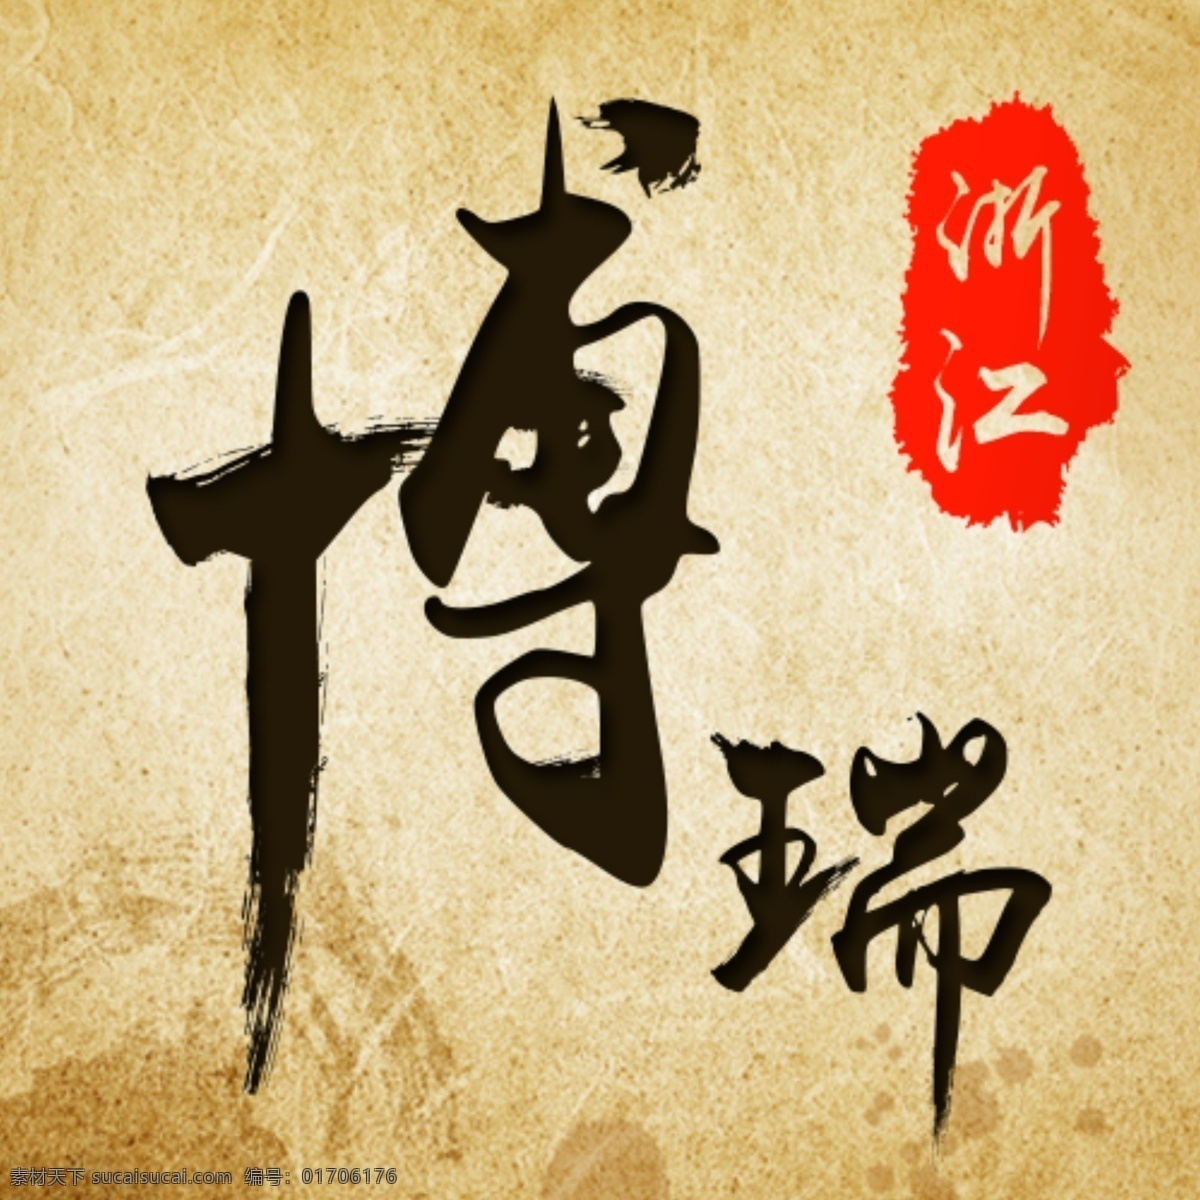 博瑞 主 图 字体 复古 中国 风 宣纸 博瑞主图 字体设计 复古中国风 黄色